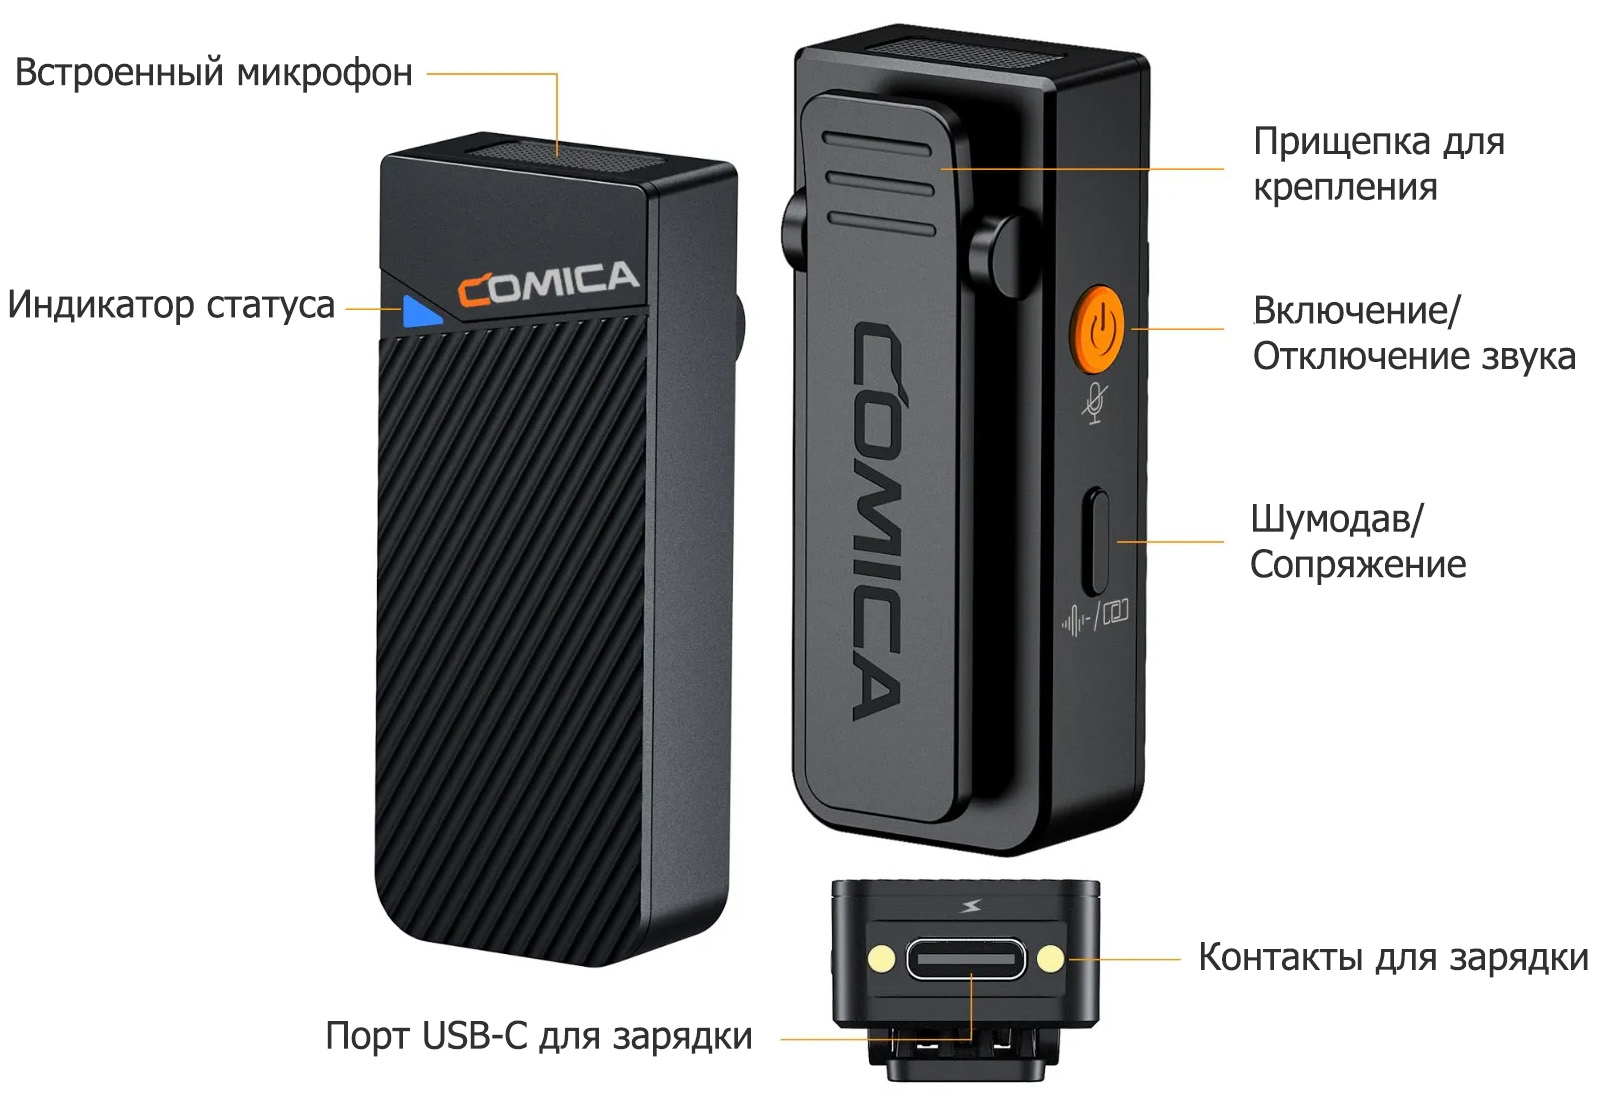 Беспроводной микрофон Comica Vimo C1 описание элементов передатчика